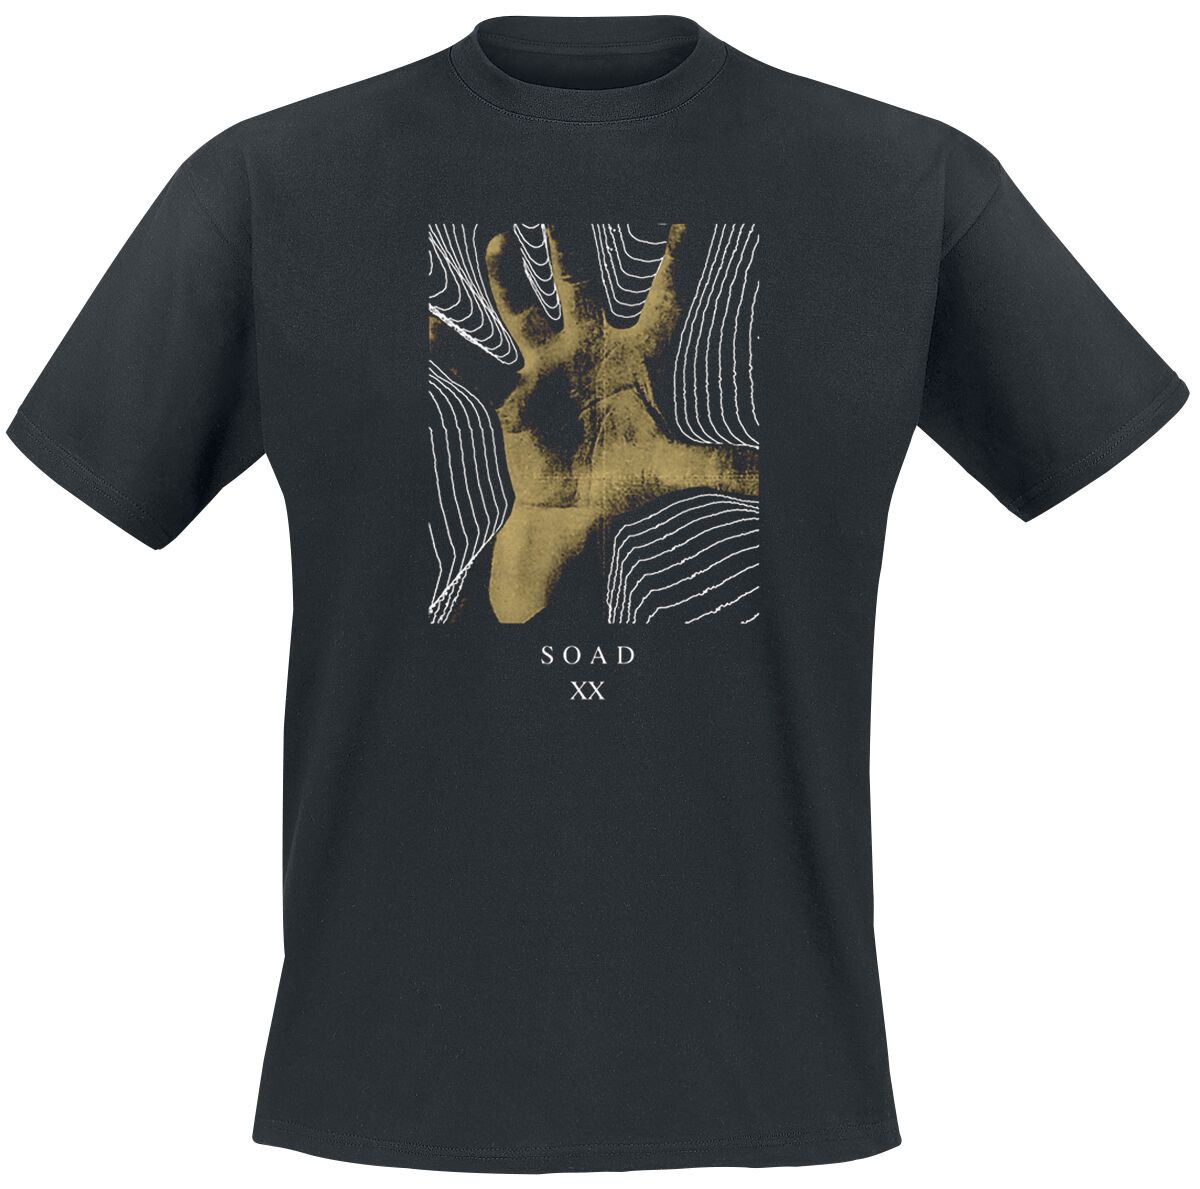 System Of A Down T-Shirt - 20 Years Hand - S bis XXL - für Männer - Größe L - schwarz  - Lizenziertes Merchandise!